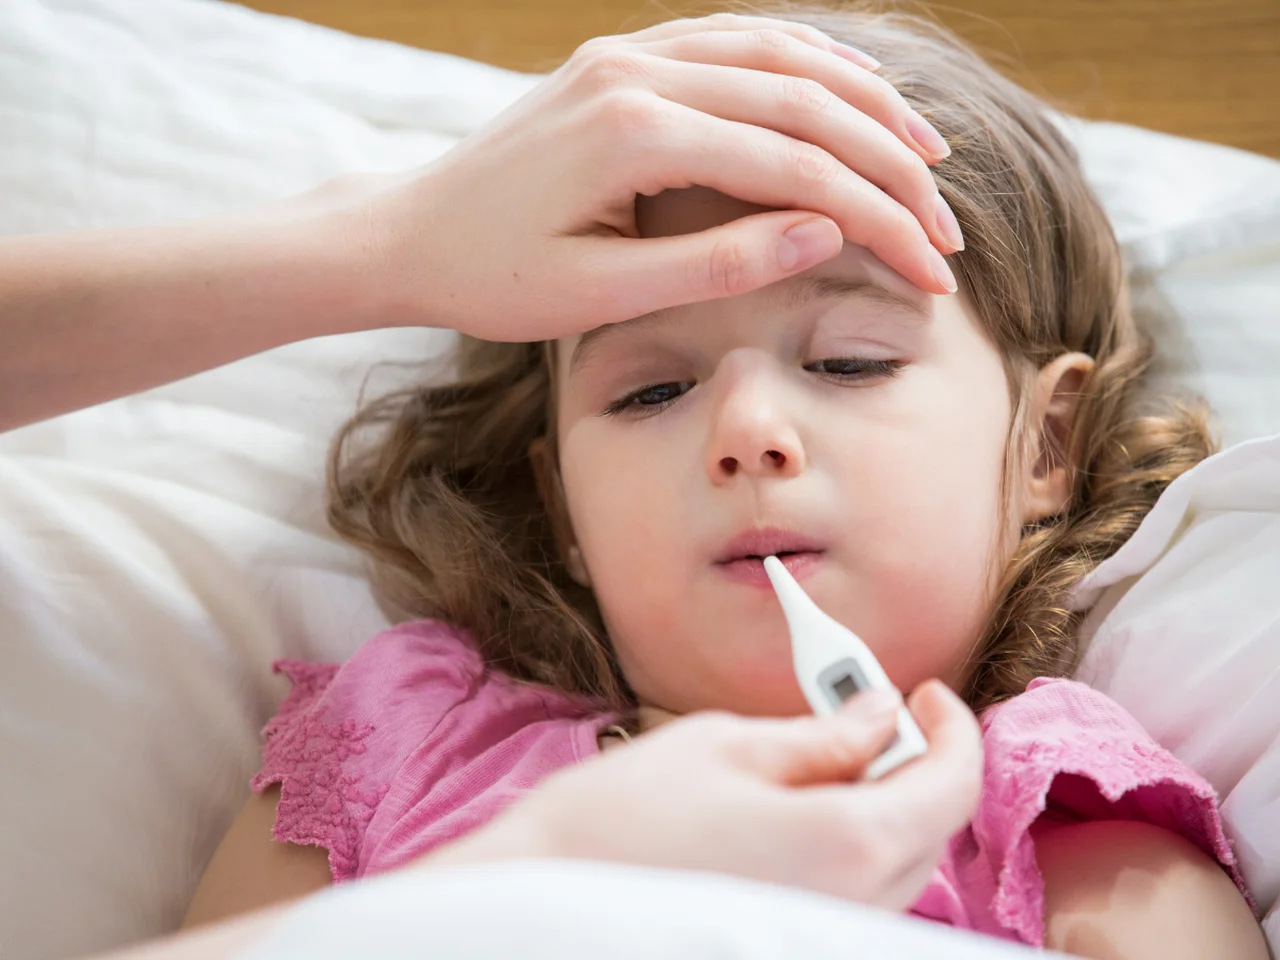 Gorączka u dziecka – co stosować, gdy nasze dziecko ma gorączkę?